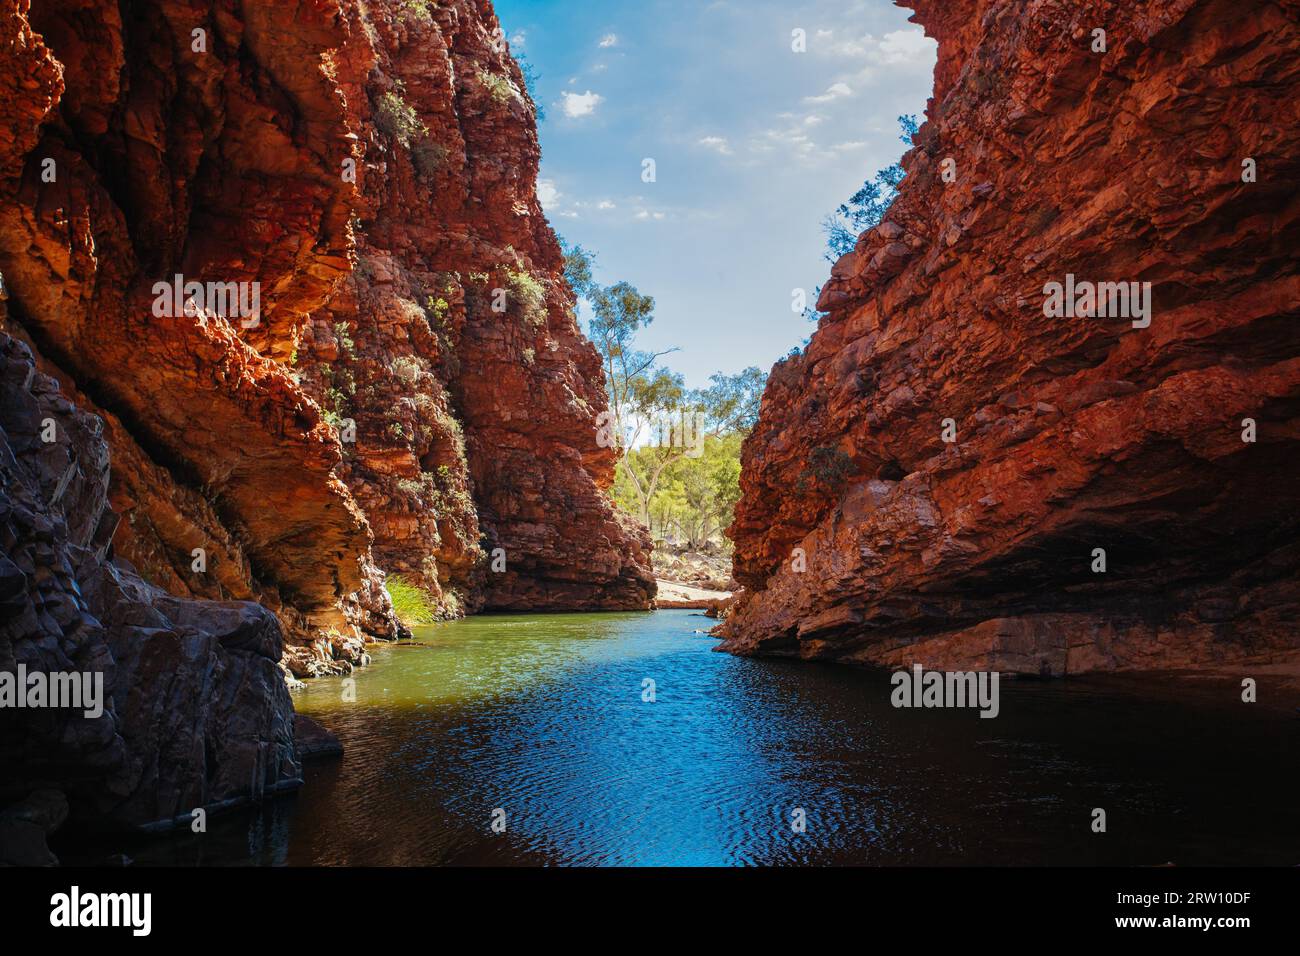 Der berühmte Simpsons Gap und seine faszinierenden Felsformationen im MacDonnell Ranges National Park, in der Nähe von Alice Springs im Northern Territory Stockfoto